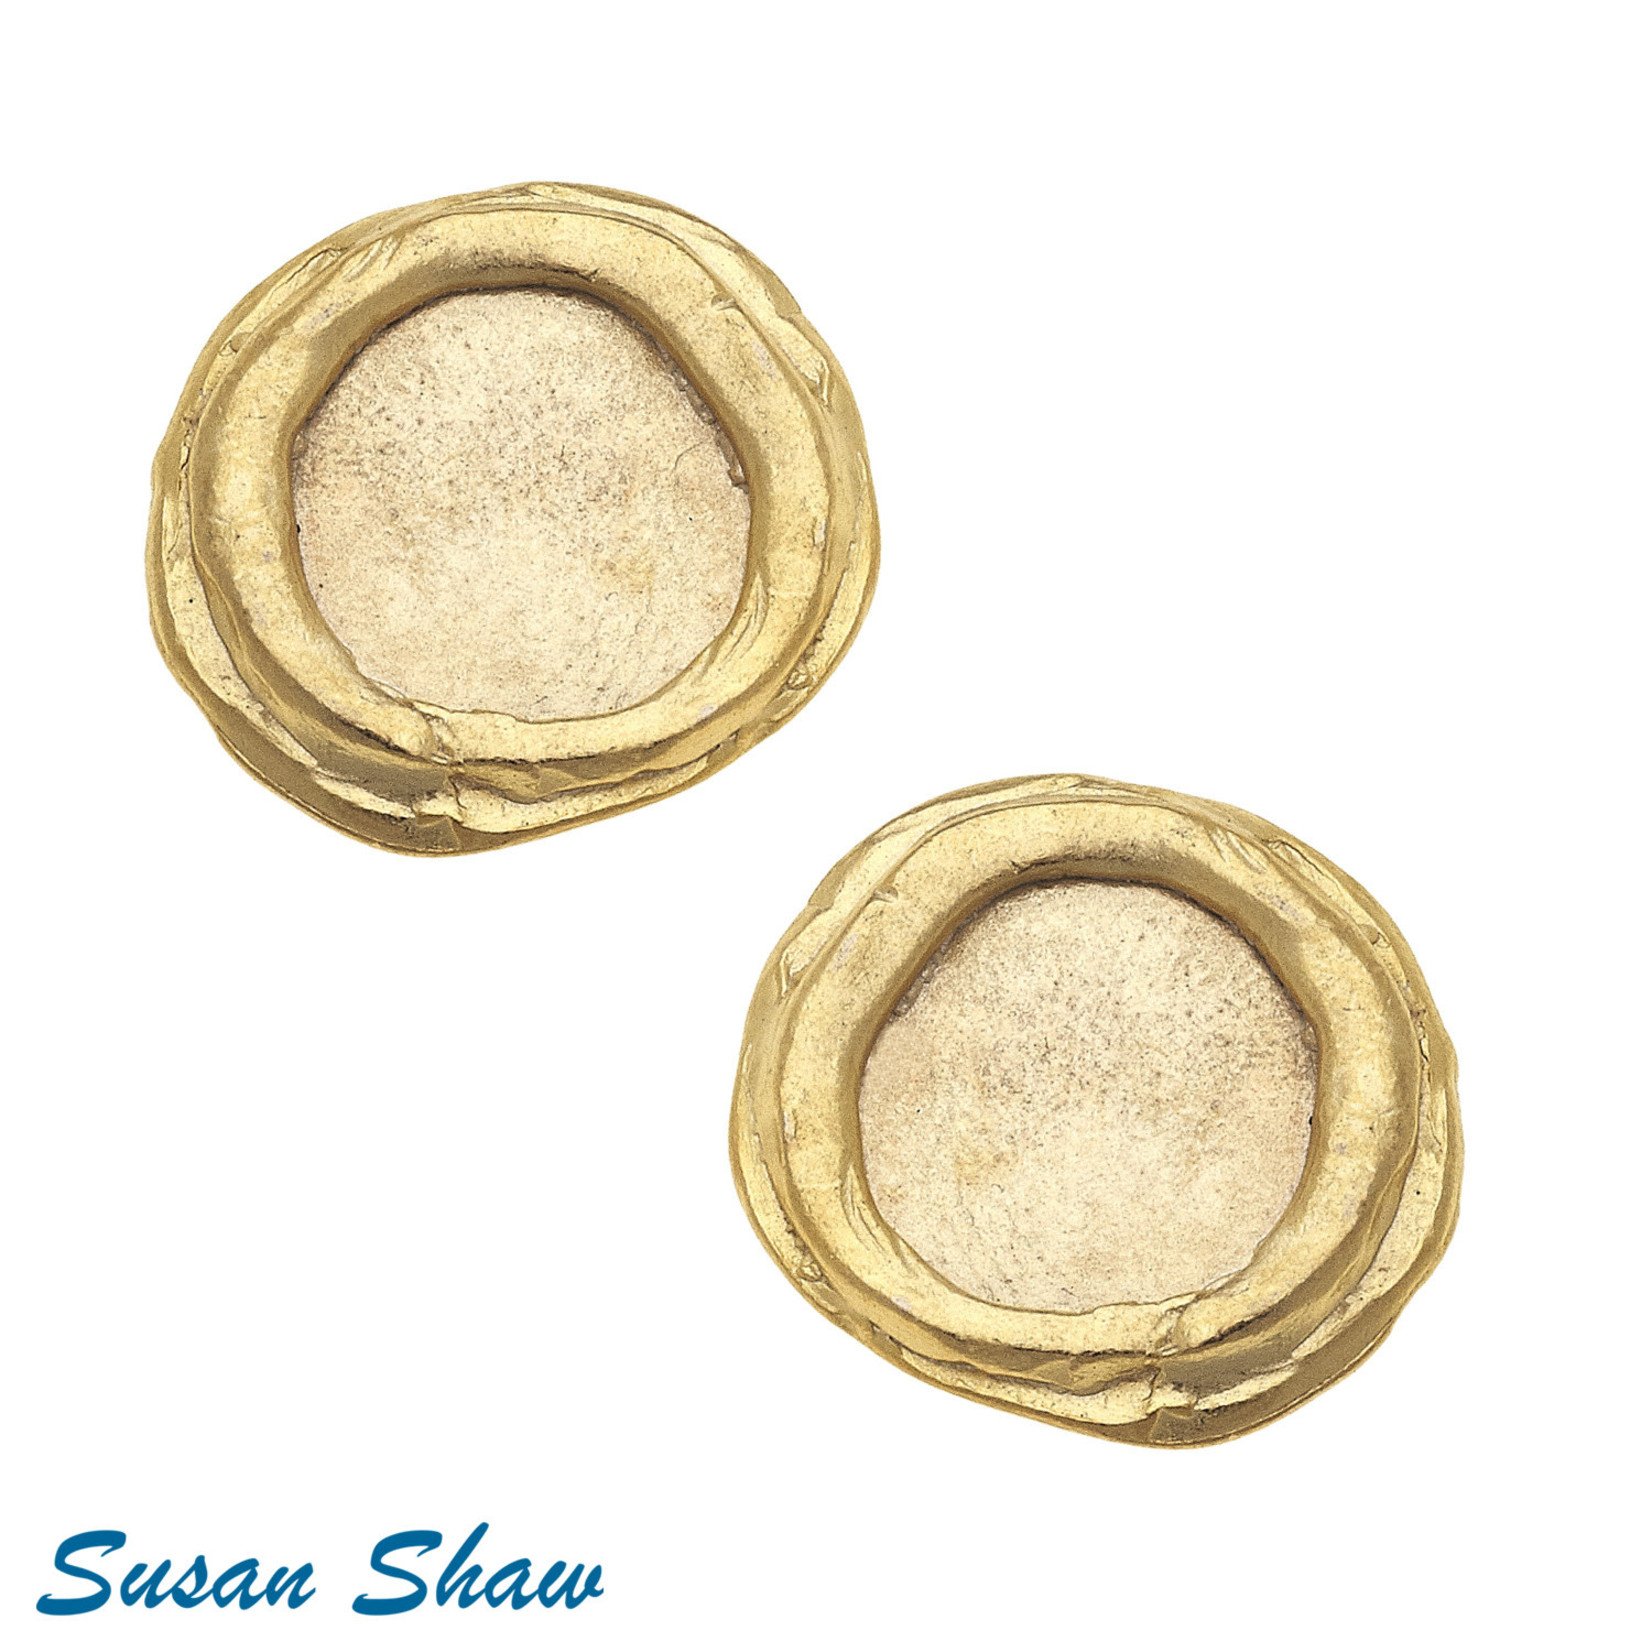 Susan Shaw Susan Shaw Gold Disc Earrings - Clip